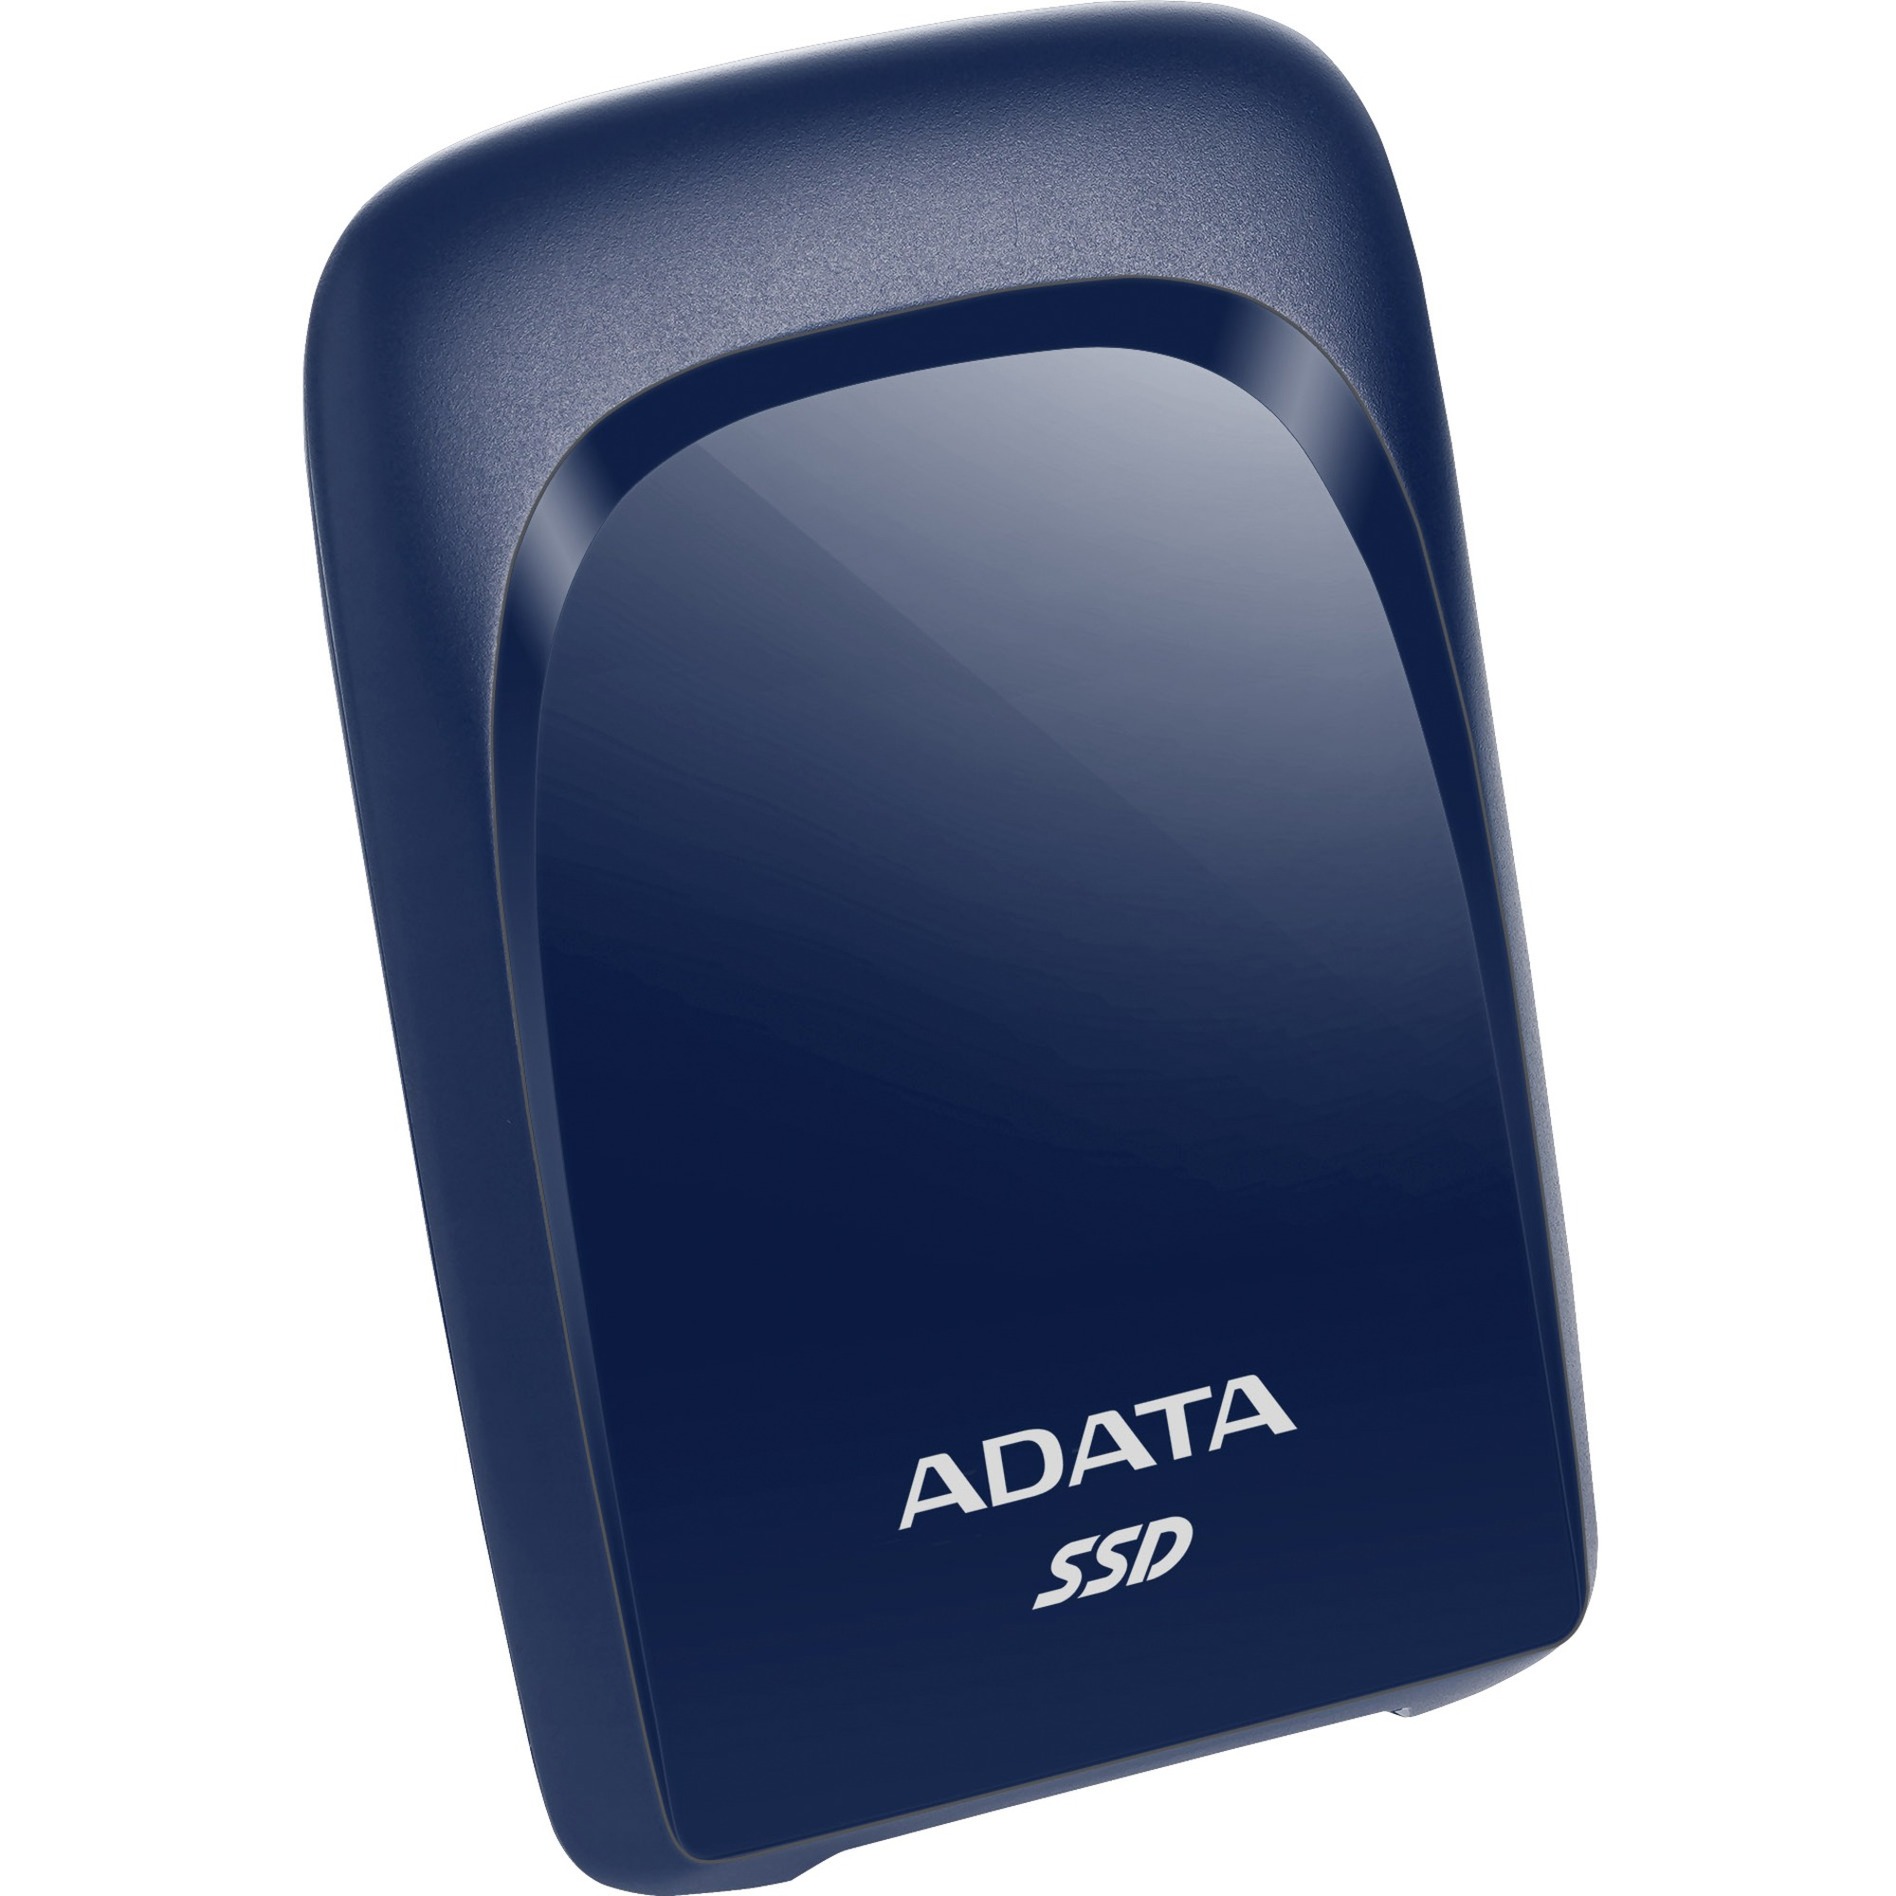 Image of Alternate - SC680 960 GB, Externe SSD online einkaufen bei Alternate